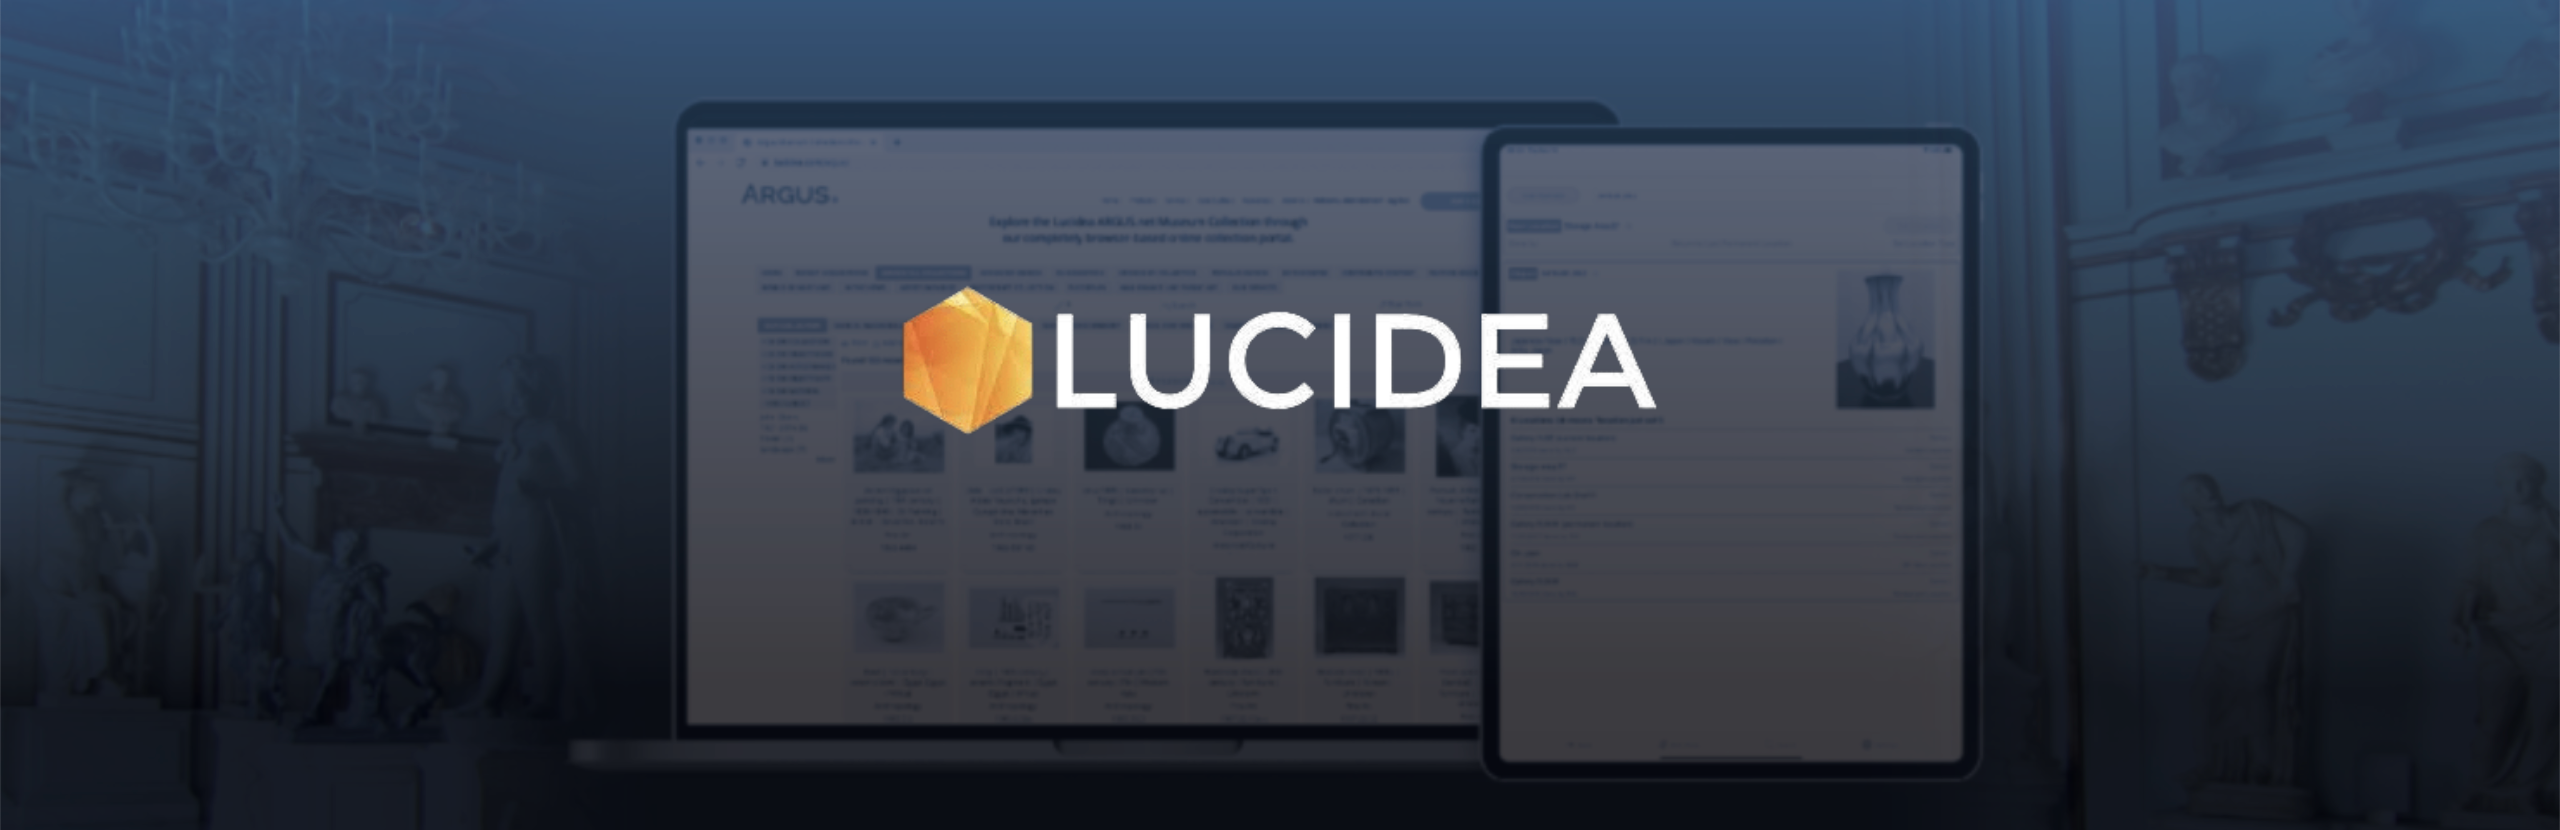 Lucidea Sponsorship Banner